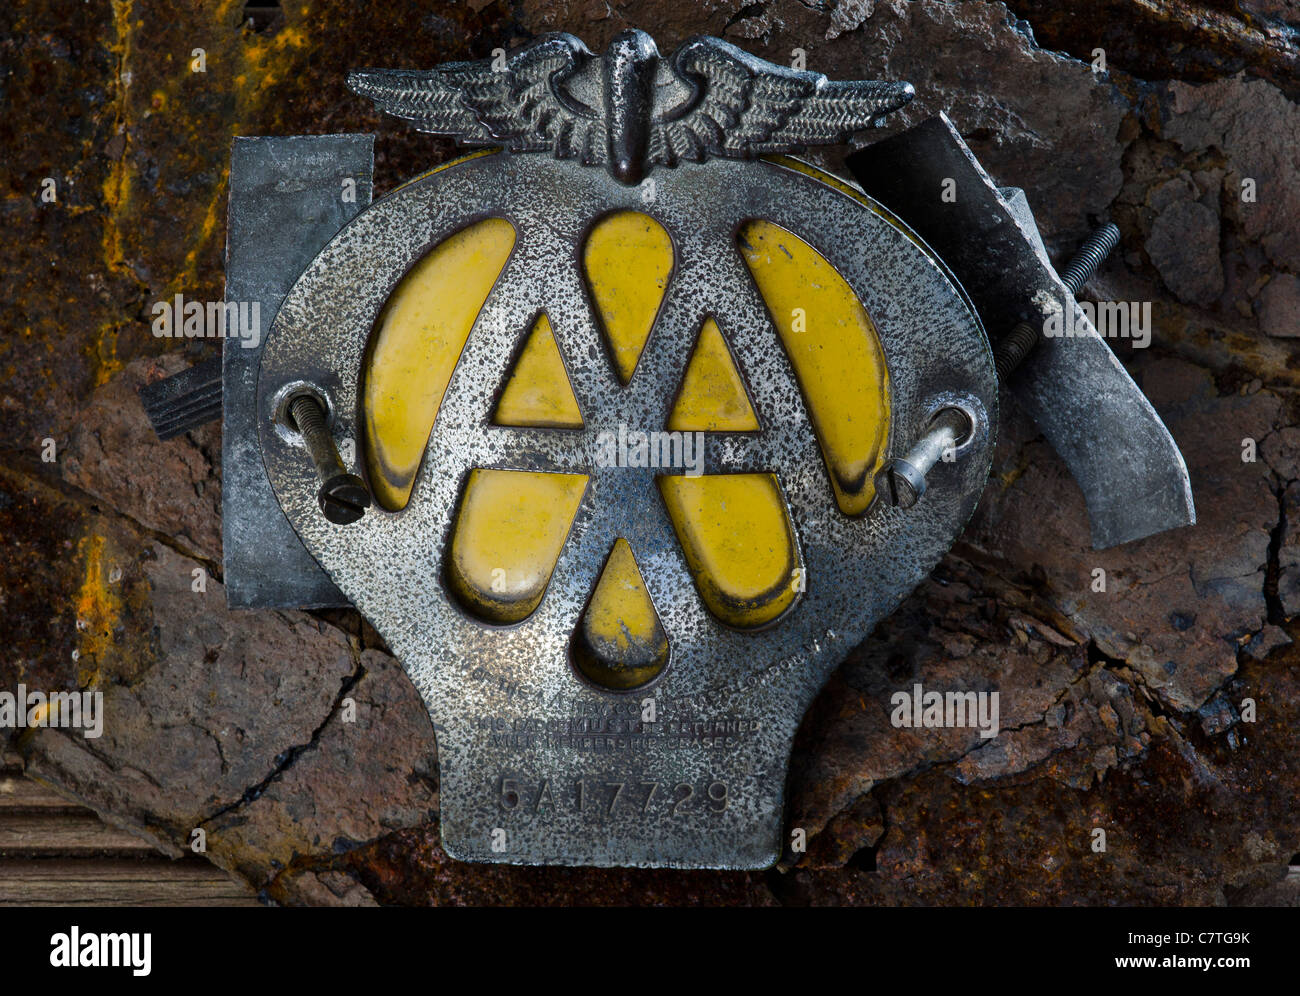 Car car emblem aa hi-res stock photography and images - Alamy